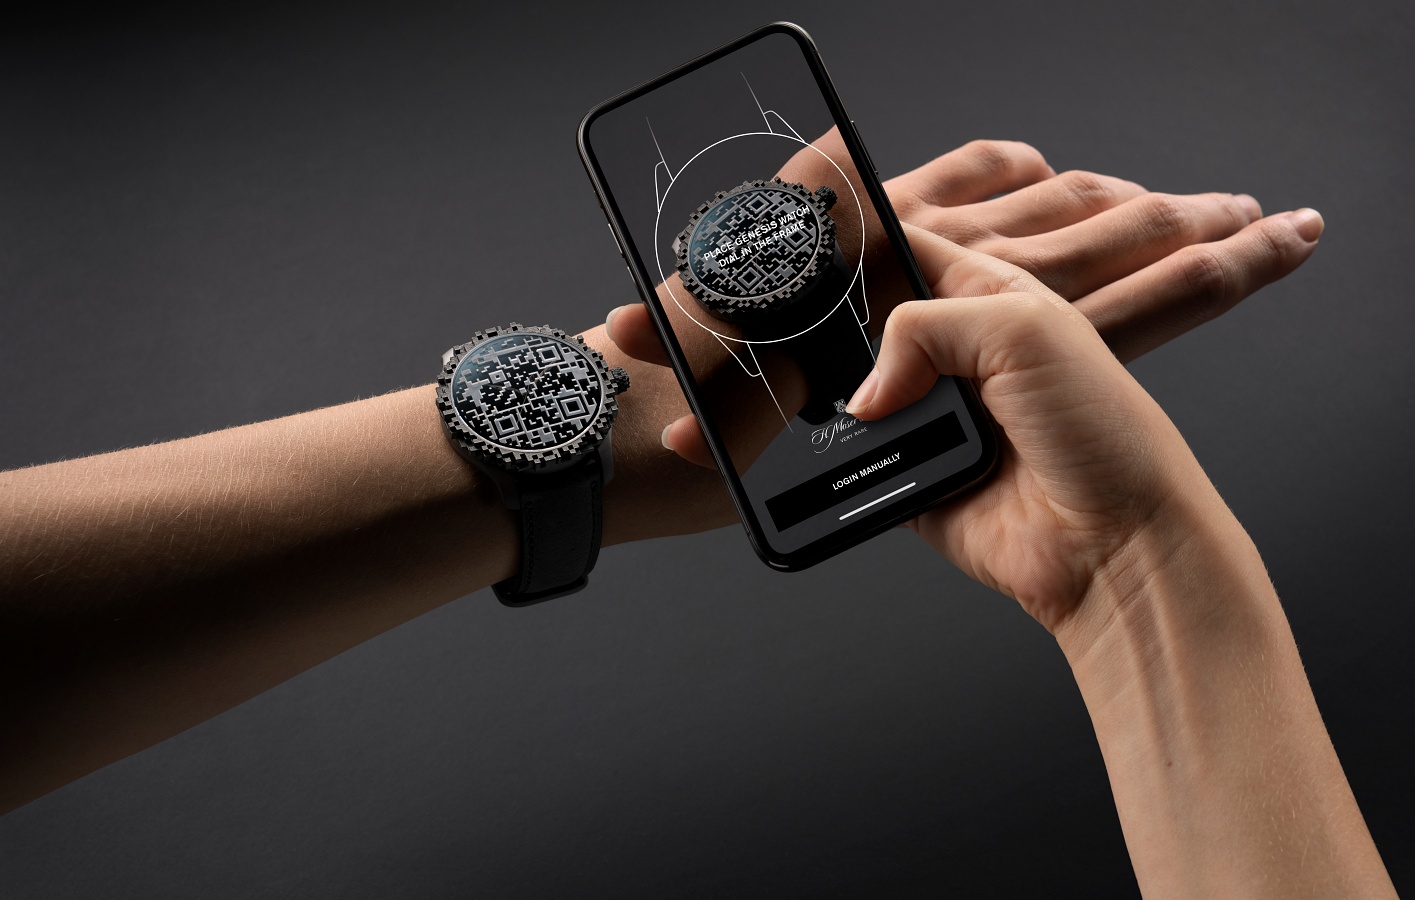 Przyszłość luksusowych zegarków! H. Moser & Cie Endeavour Central Second Genesis